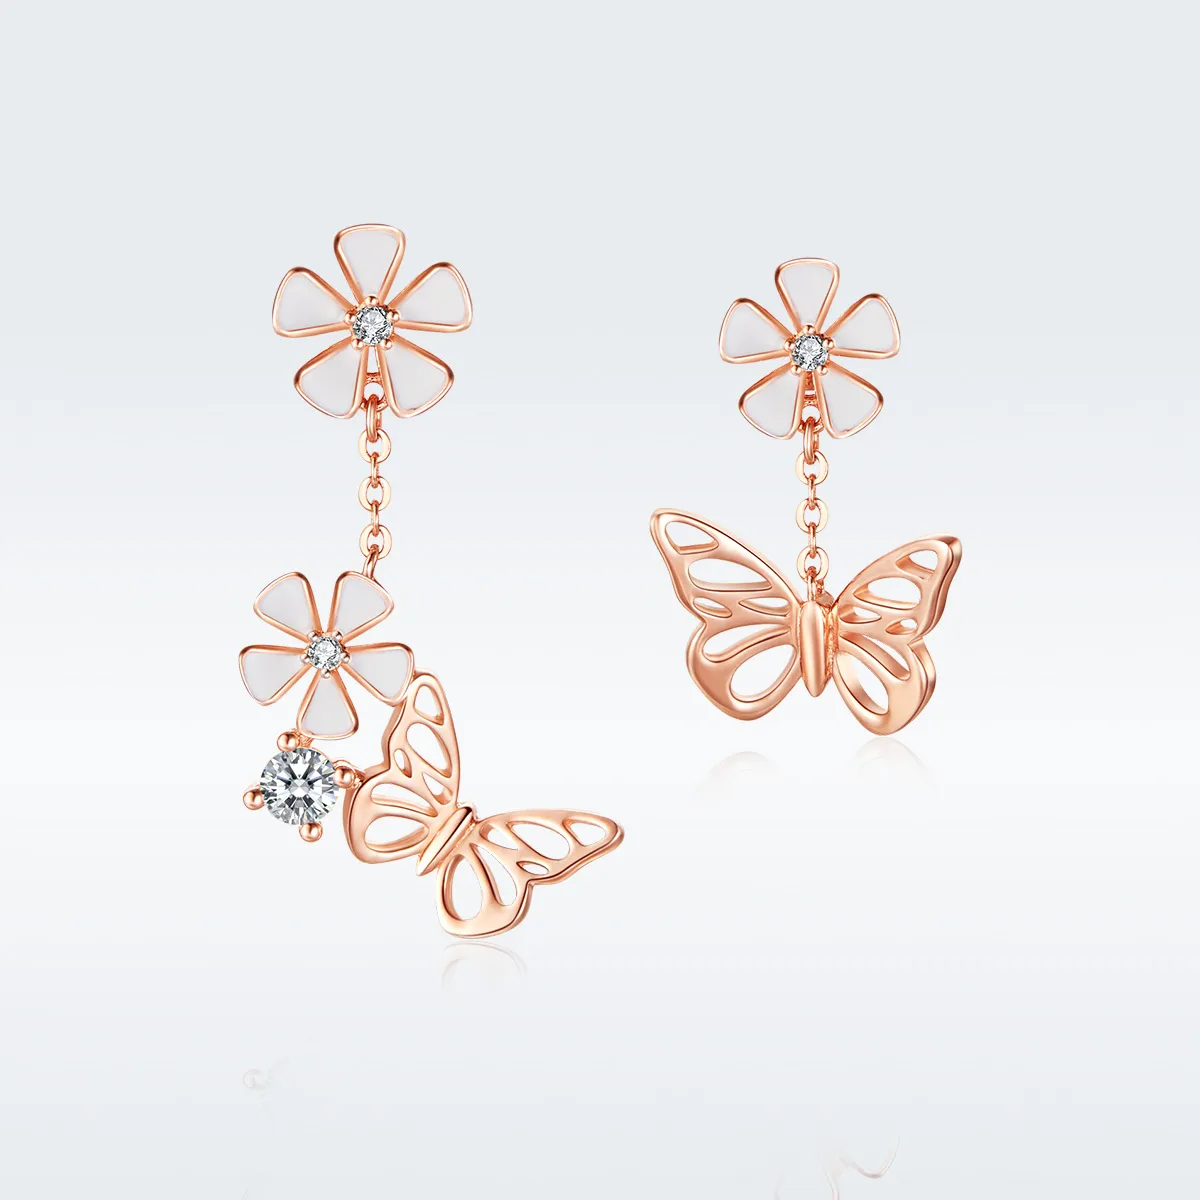 Cercei lungi Tip Pandora cu Fluture dansant din aur rose - BSE100